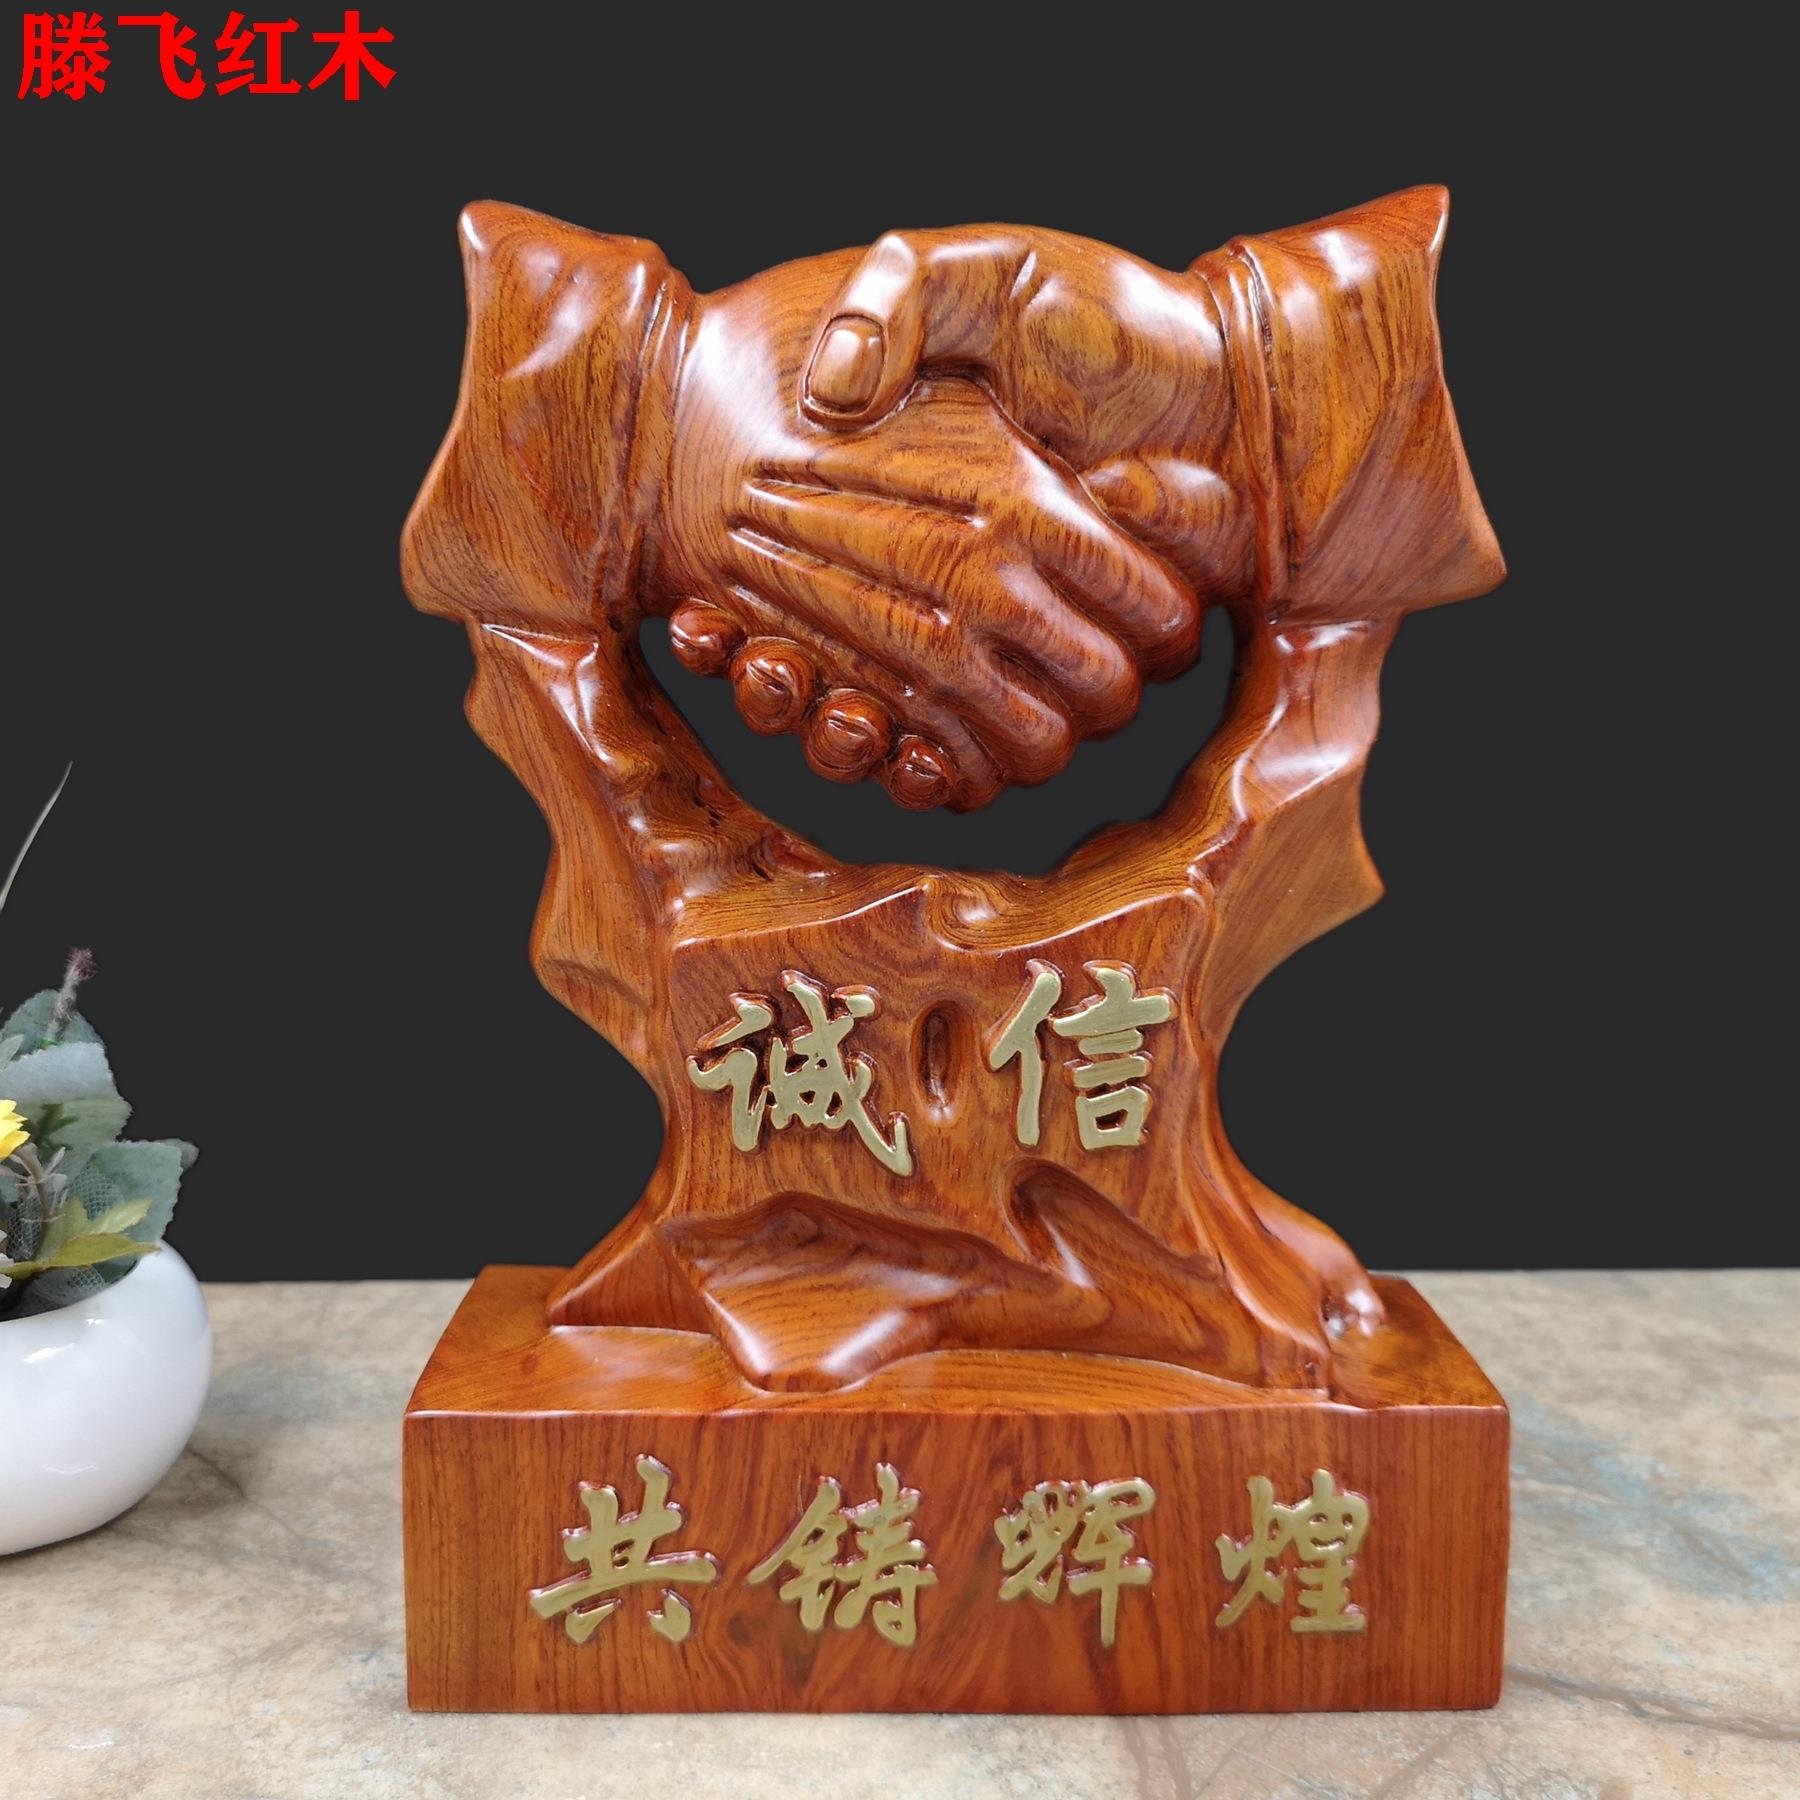 花梨实木雕刻握手摆件诚信赢天下木质工艺礼品红木桌面创意摆设品